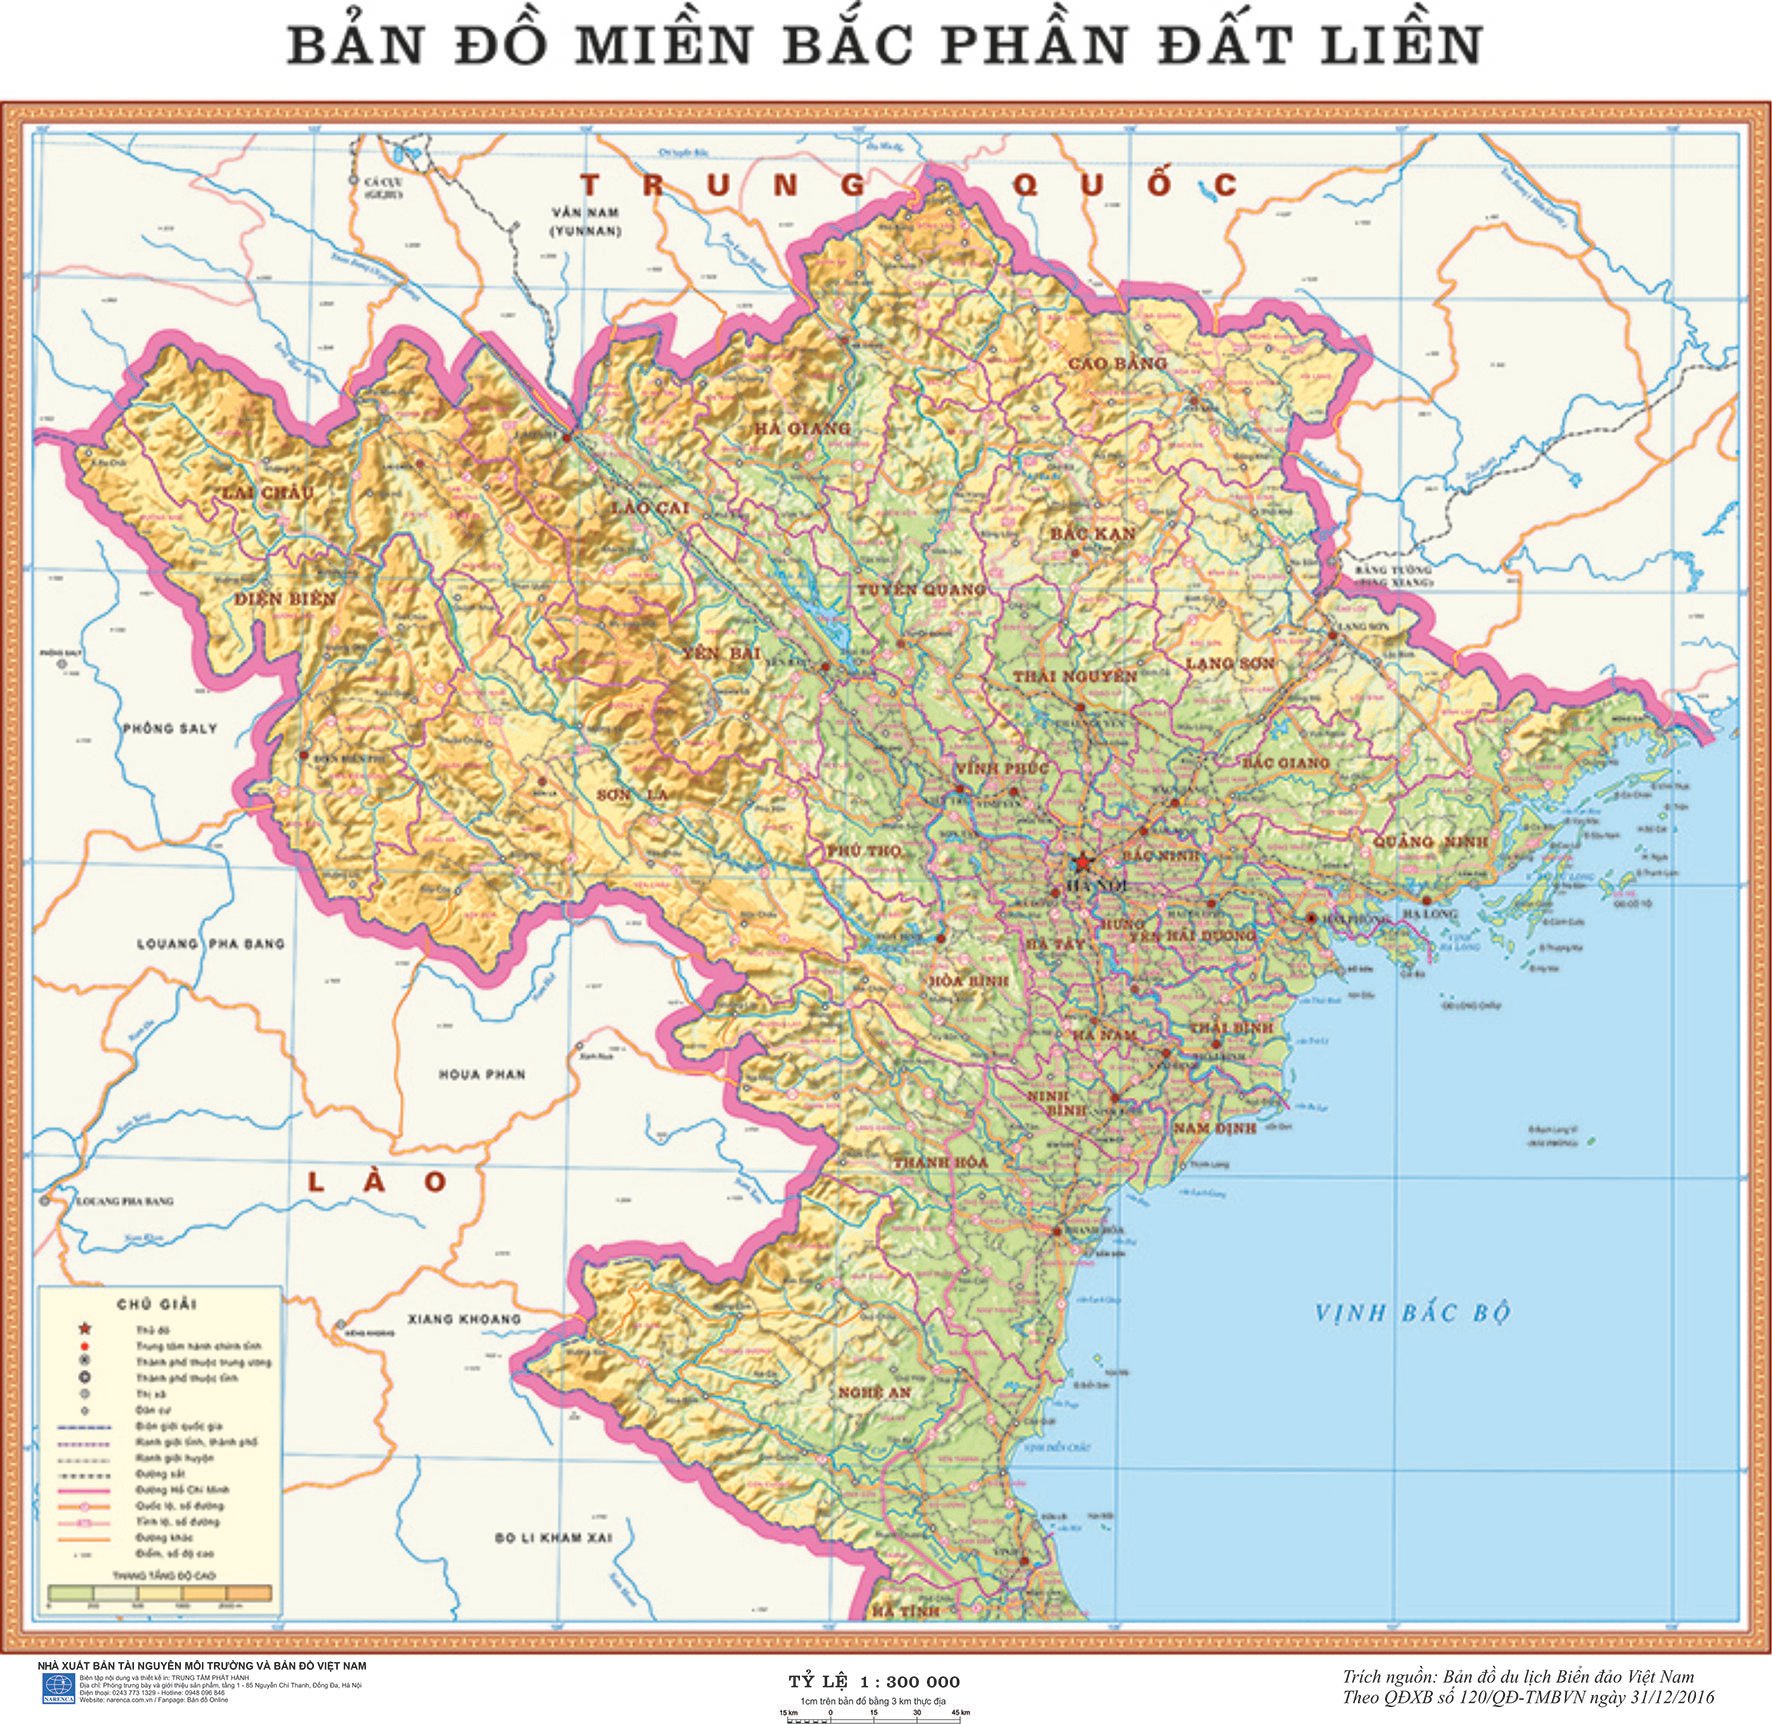 Bản đồ tự nhiên miền Bắc Việt Nam 2024 giúp bạn khám phá những cảnh quan thiên nhiên đẹp nhất của khu vực này, với các khu rừng thông, thác nước và hồ nước trong xanh. Hình ảnh này có thể giúp bạn nắm bắt những địa điểm du lịch hấp dẫn trong miền Bắc Việt Nam.